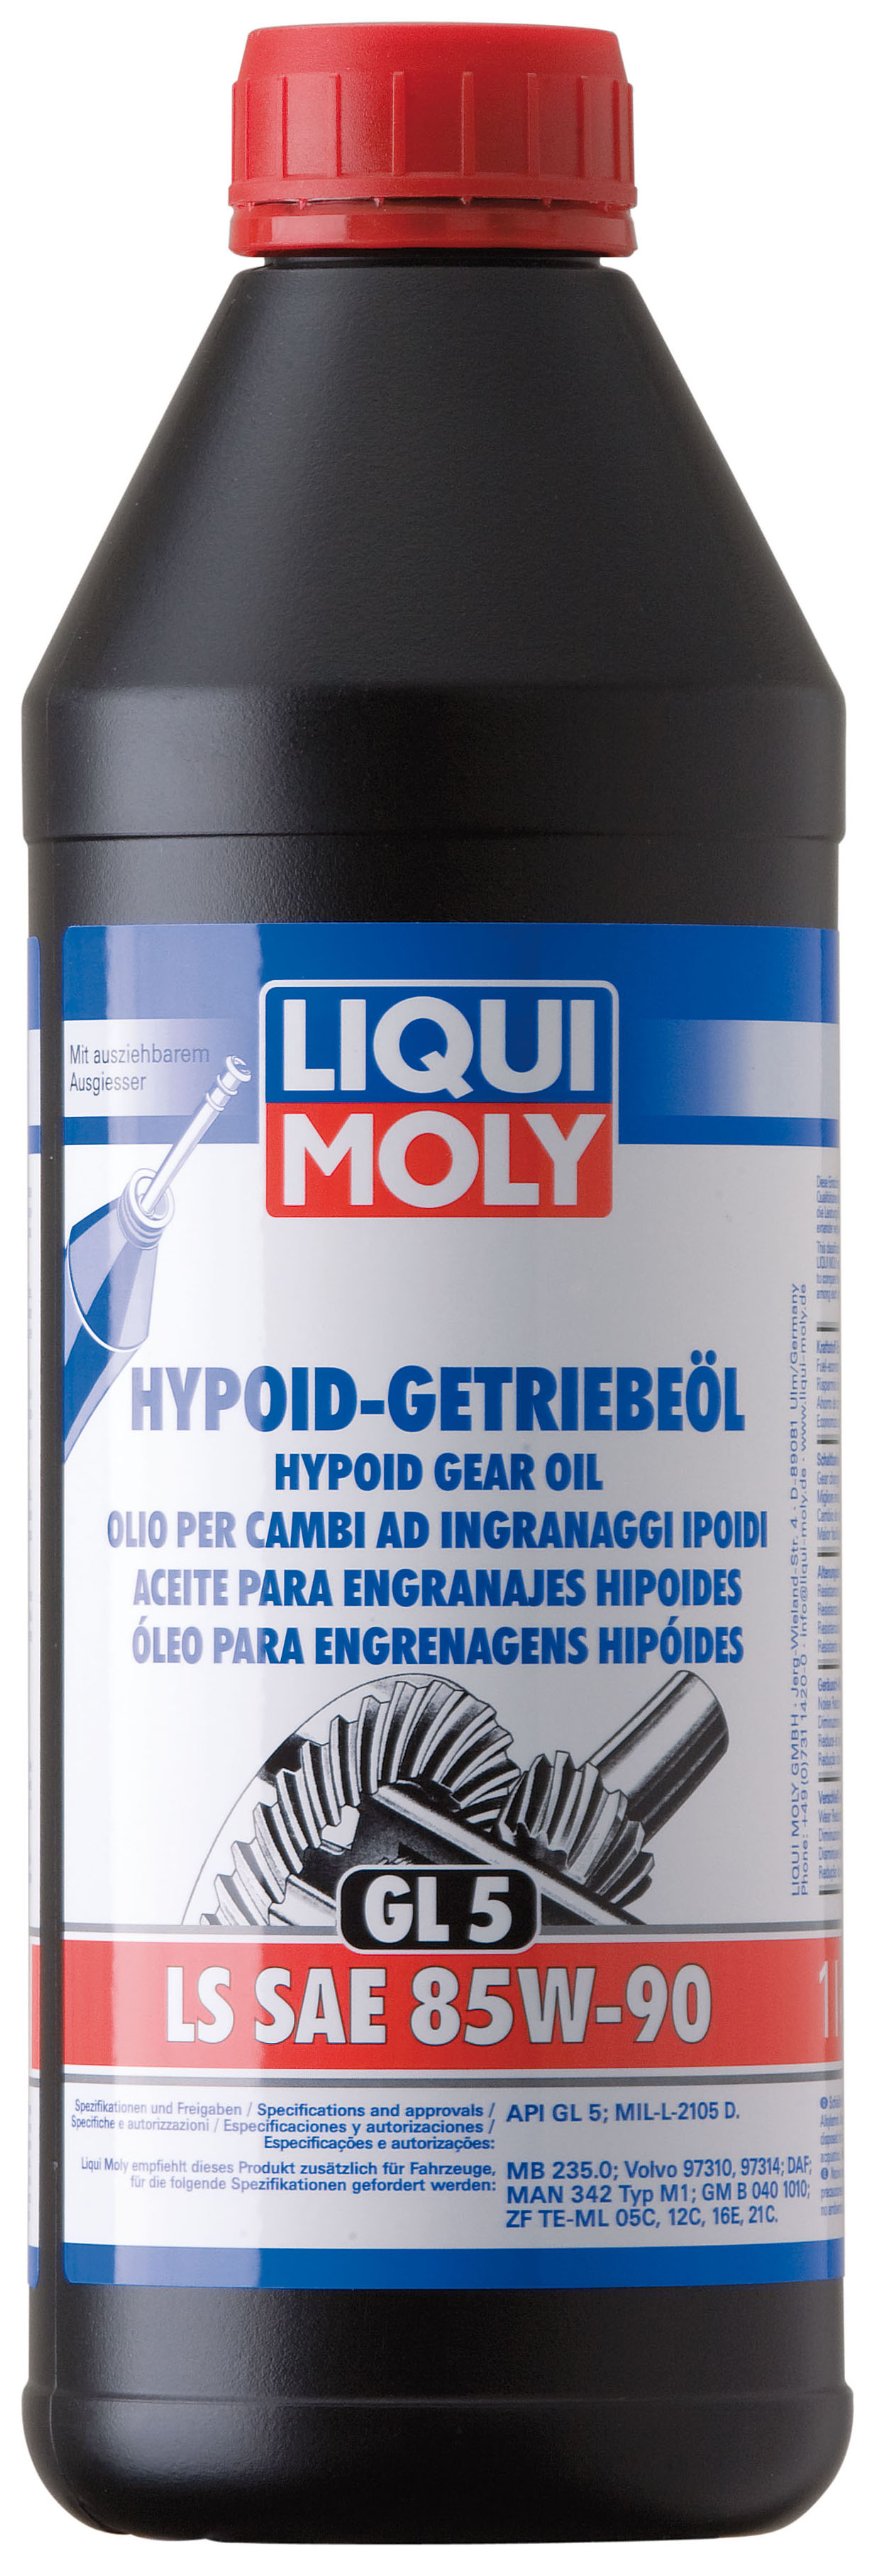 LIQUI MOLY Hypoid-Getriebeöl (GL5) LS SAE 85W-90 | 1 L | Getriebeöl | Hydrauliköl | Art.-Nr.: 1410 von Liqui Moly